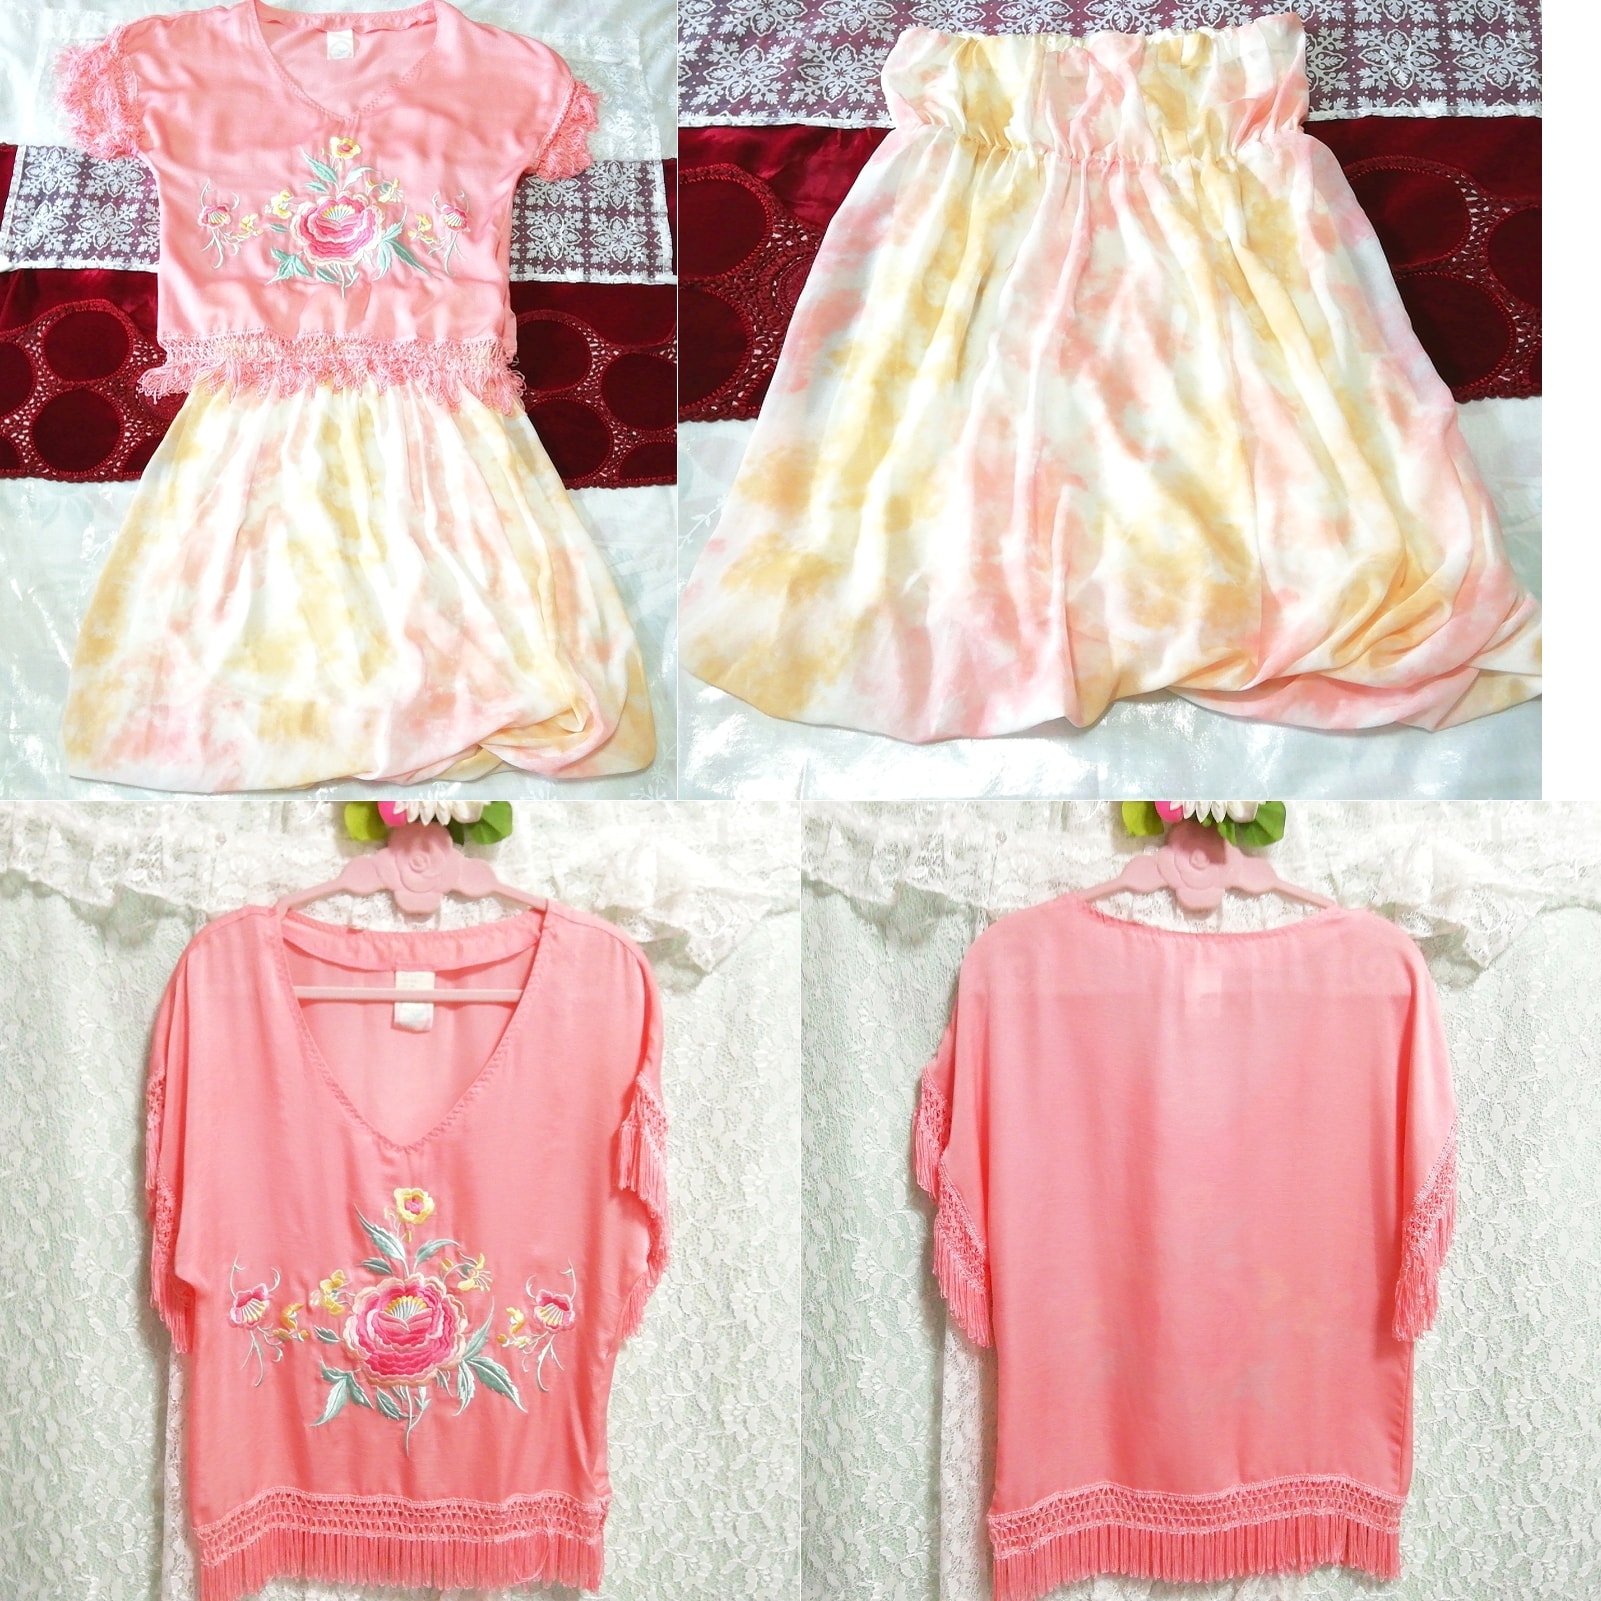 粉色流苏花卉刺绣束腰外衣睡衣淡橙色喇叭裙 2 件, 时尚, 女士时装, 睡衣